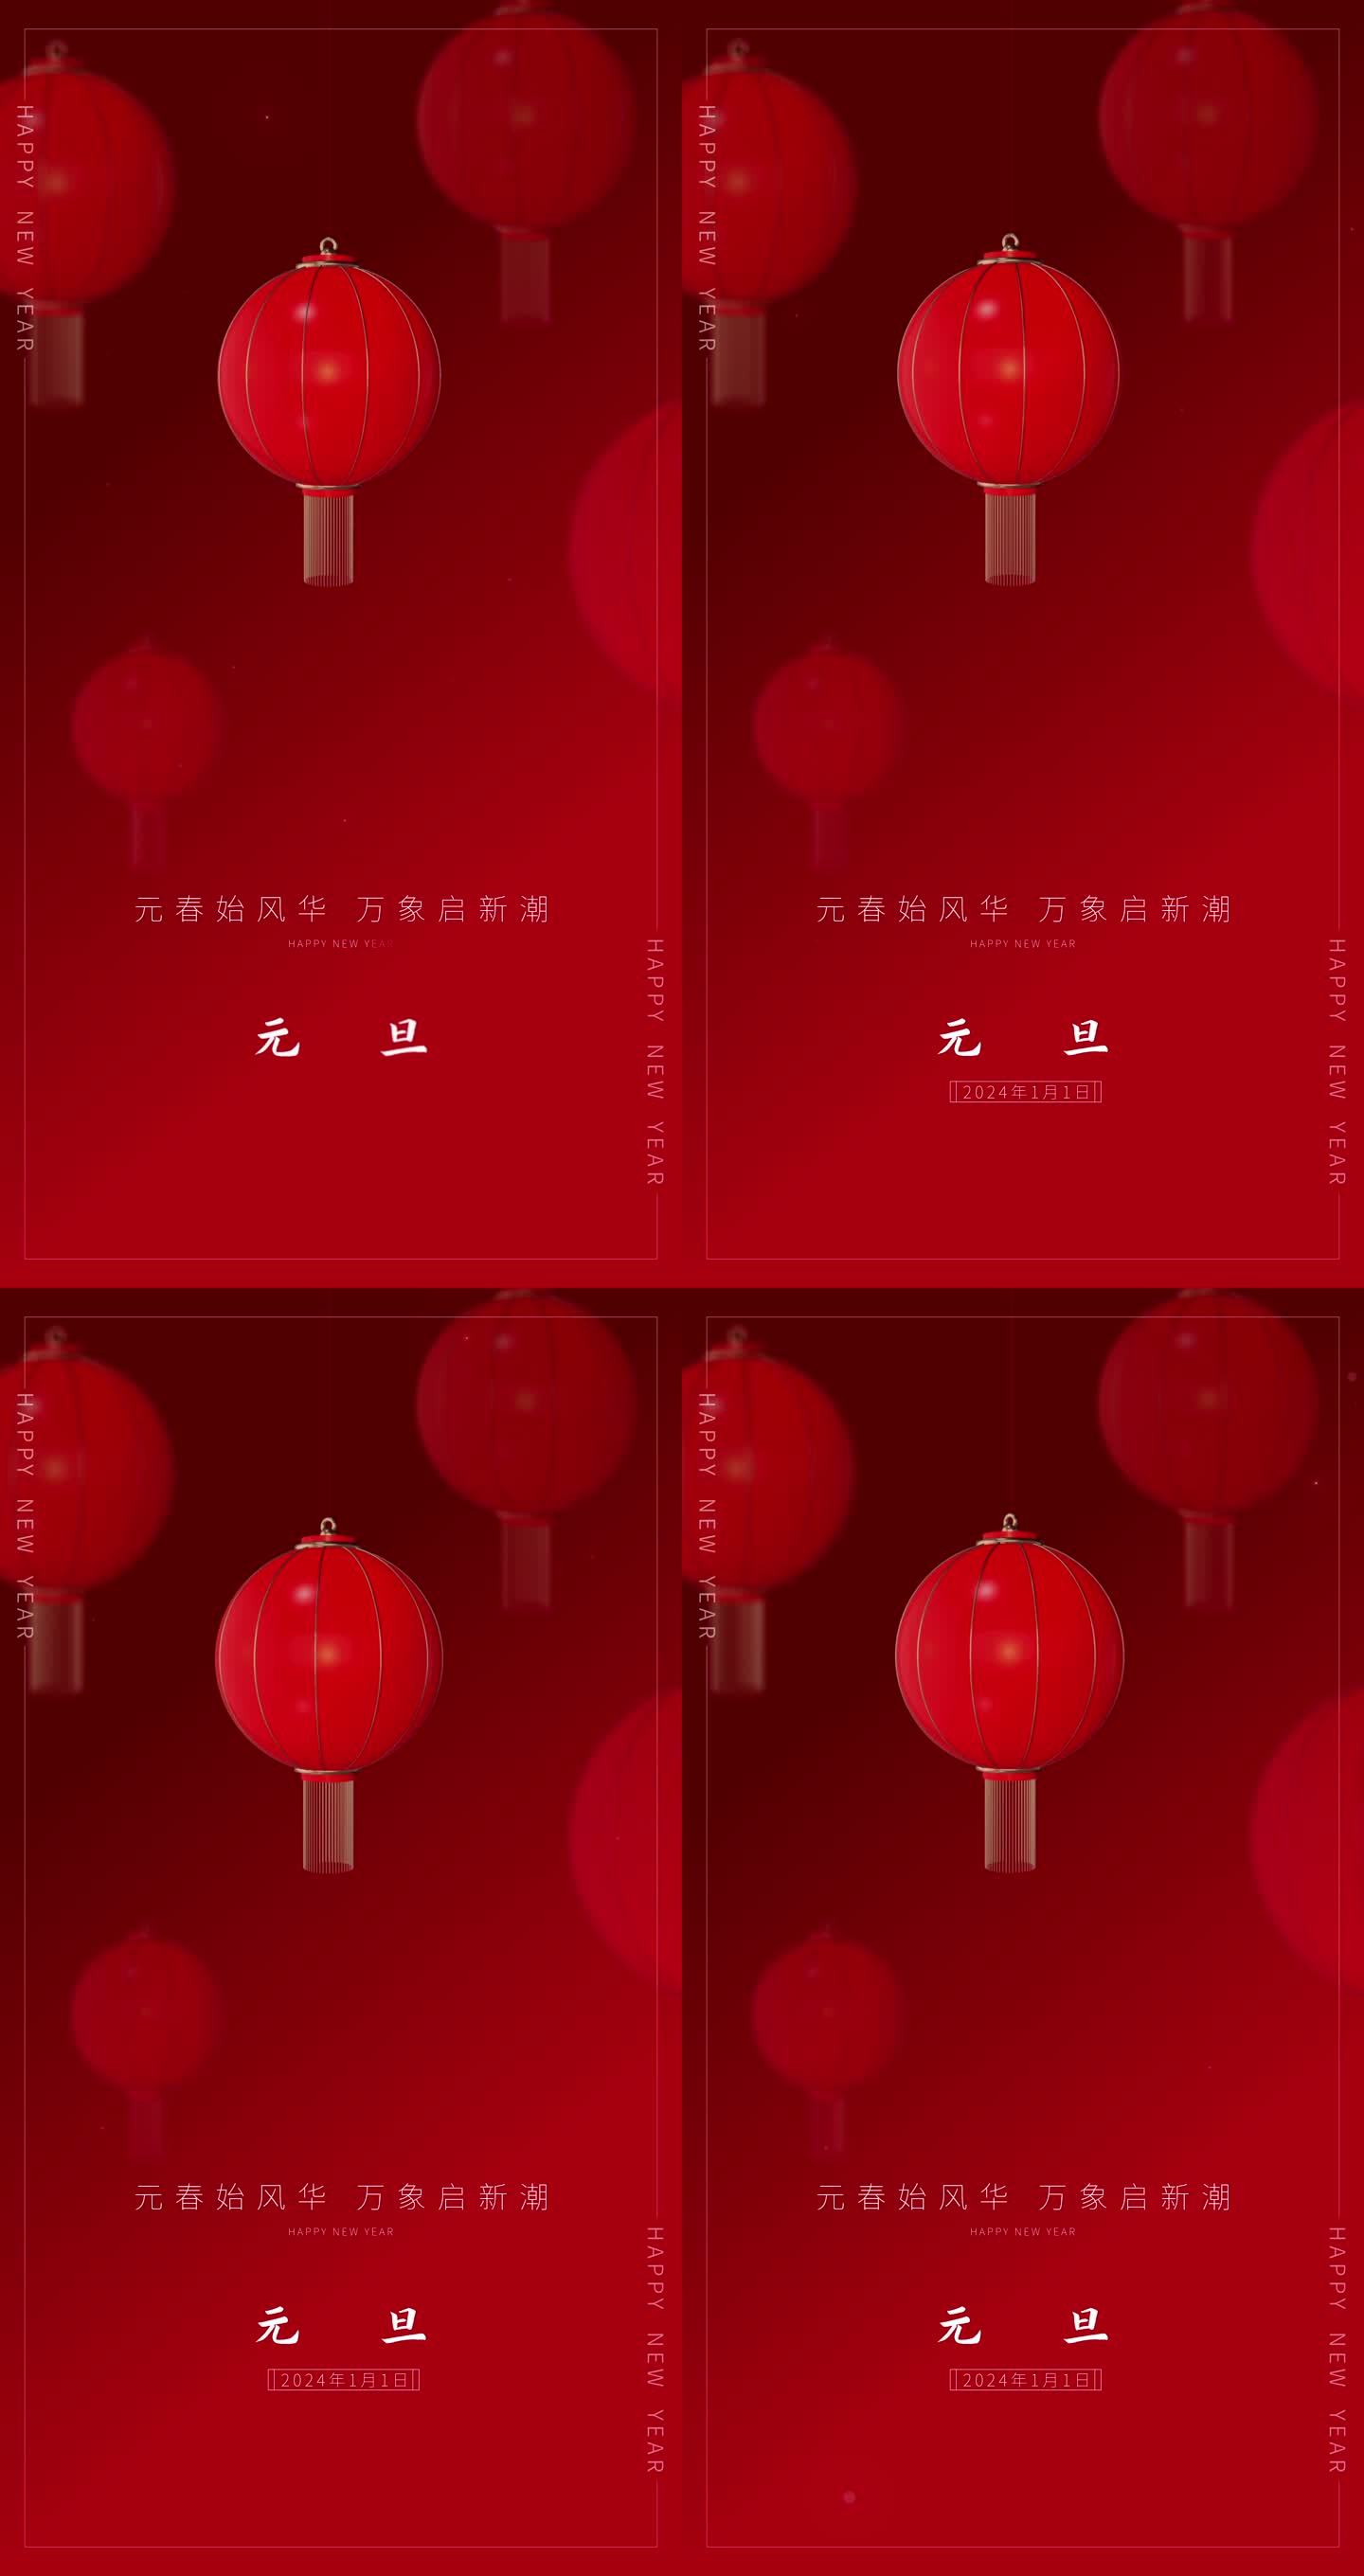 元旦短视频送祝福C节日气氛 中国红灯笼